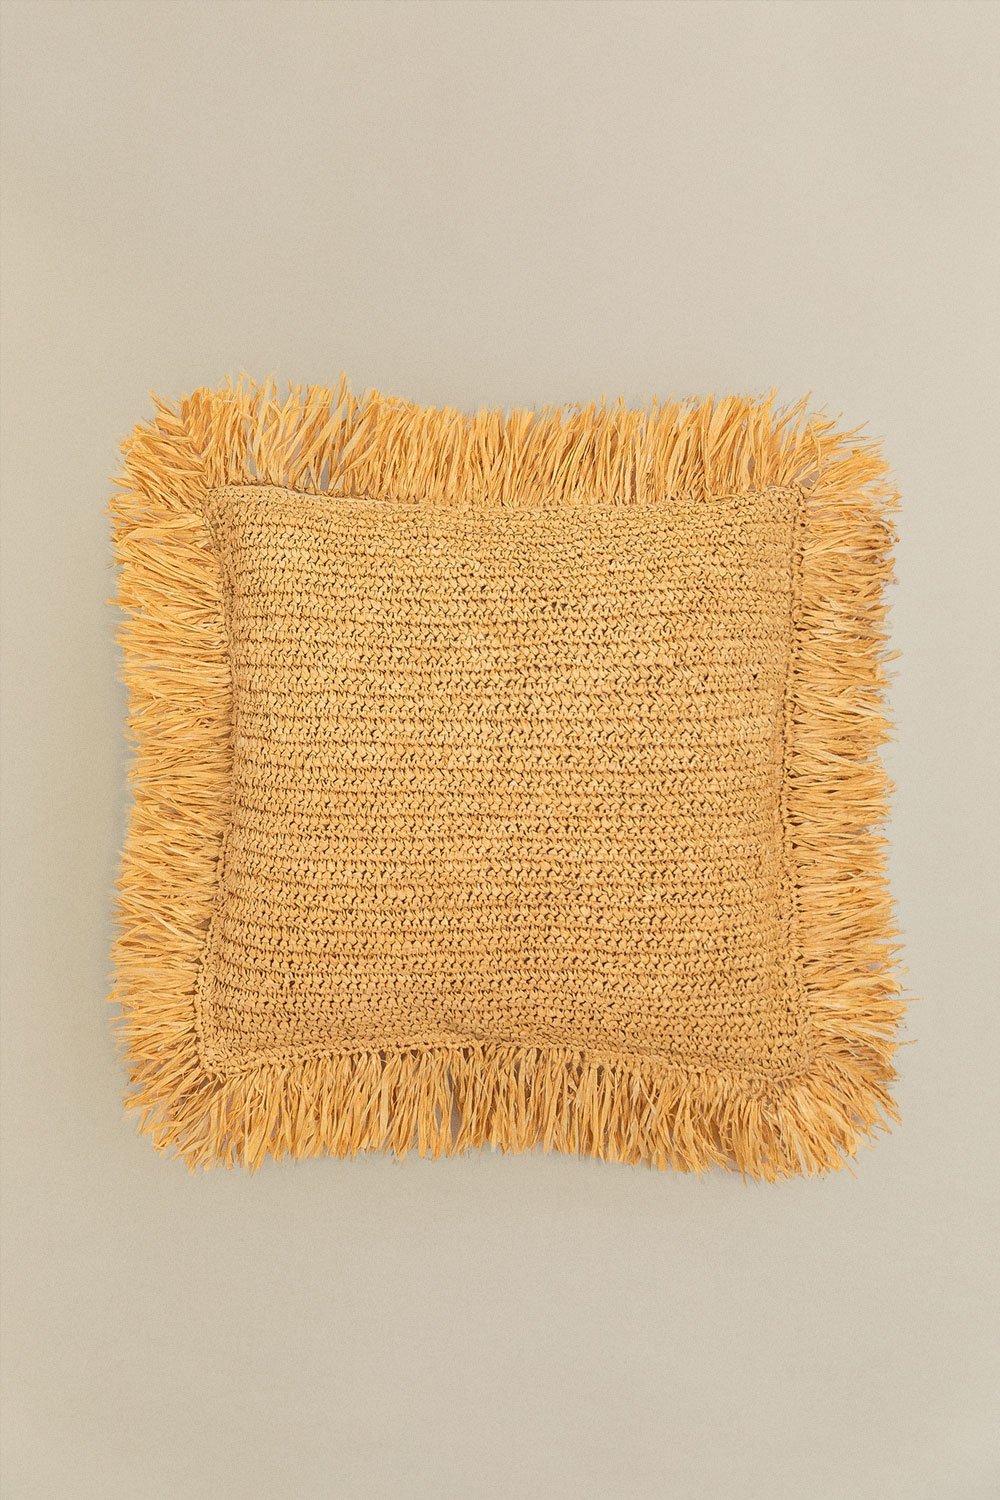 Kwadratowa poduszka z plecionej rafii (45x45 cm) Doncka, obrazek w galerii 1